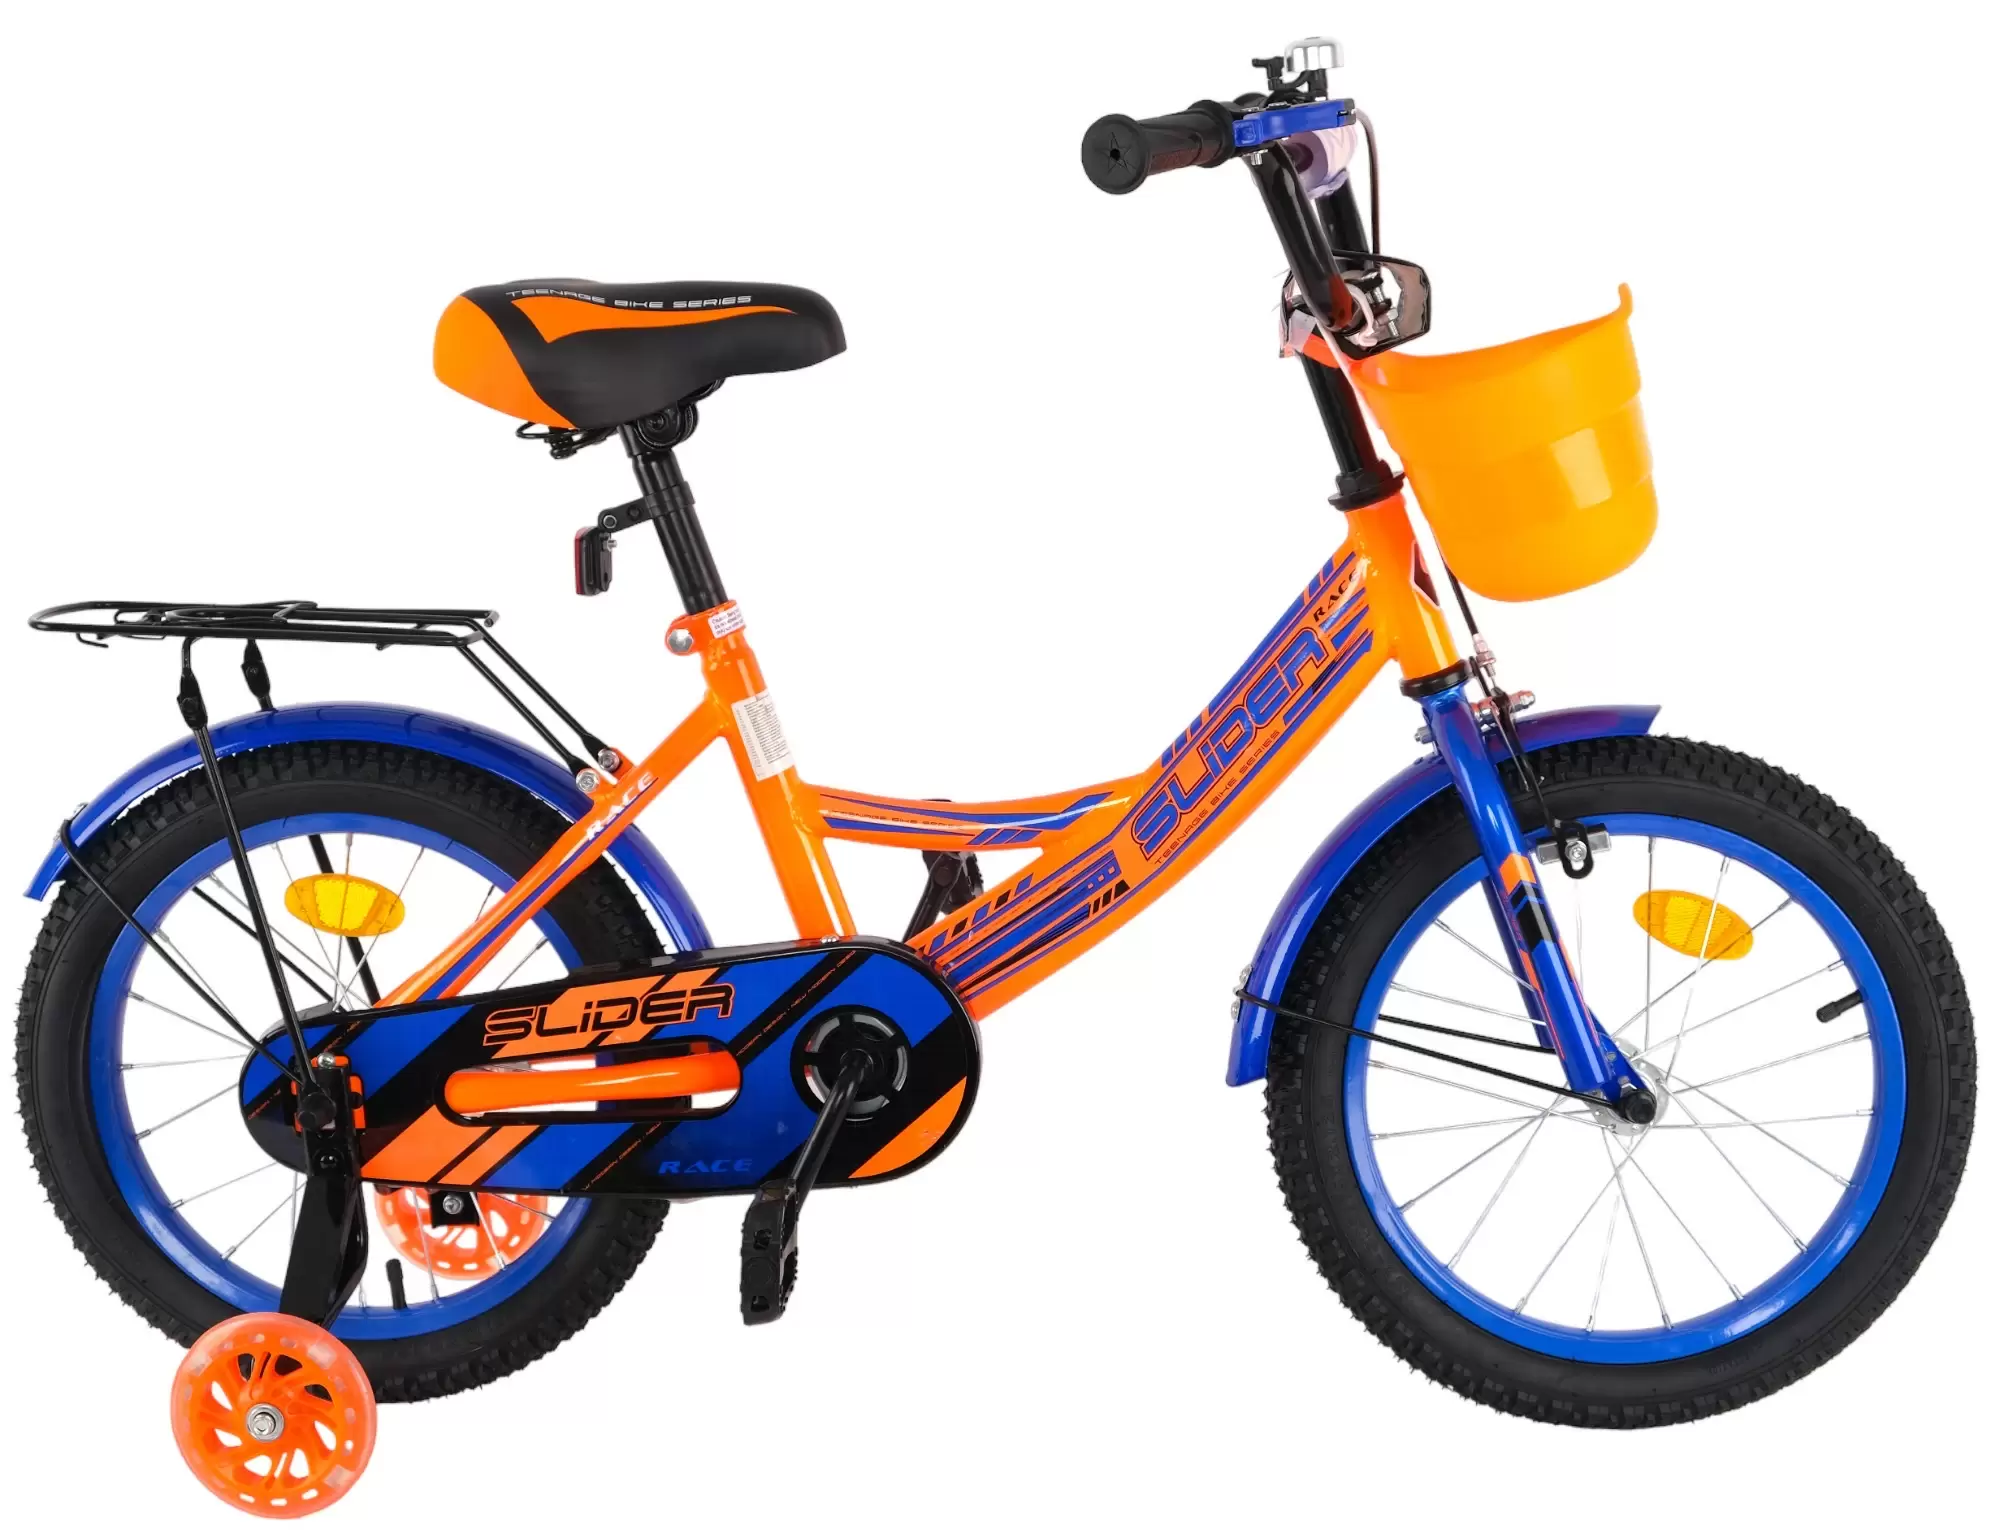 Велосипед Slider 16 дюймов оранжевый (5 - 6 лет)